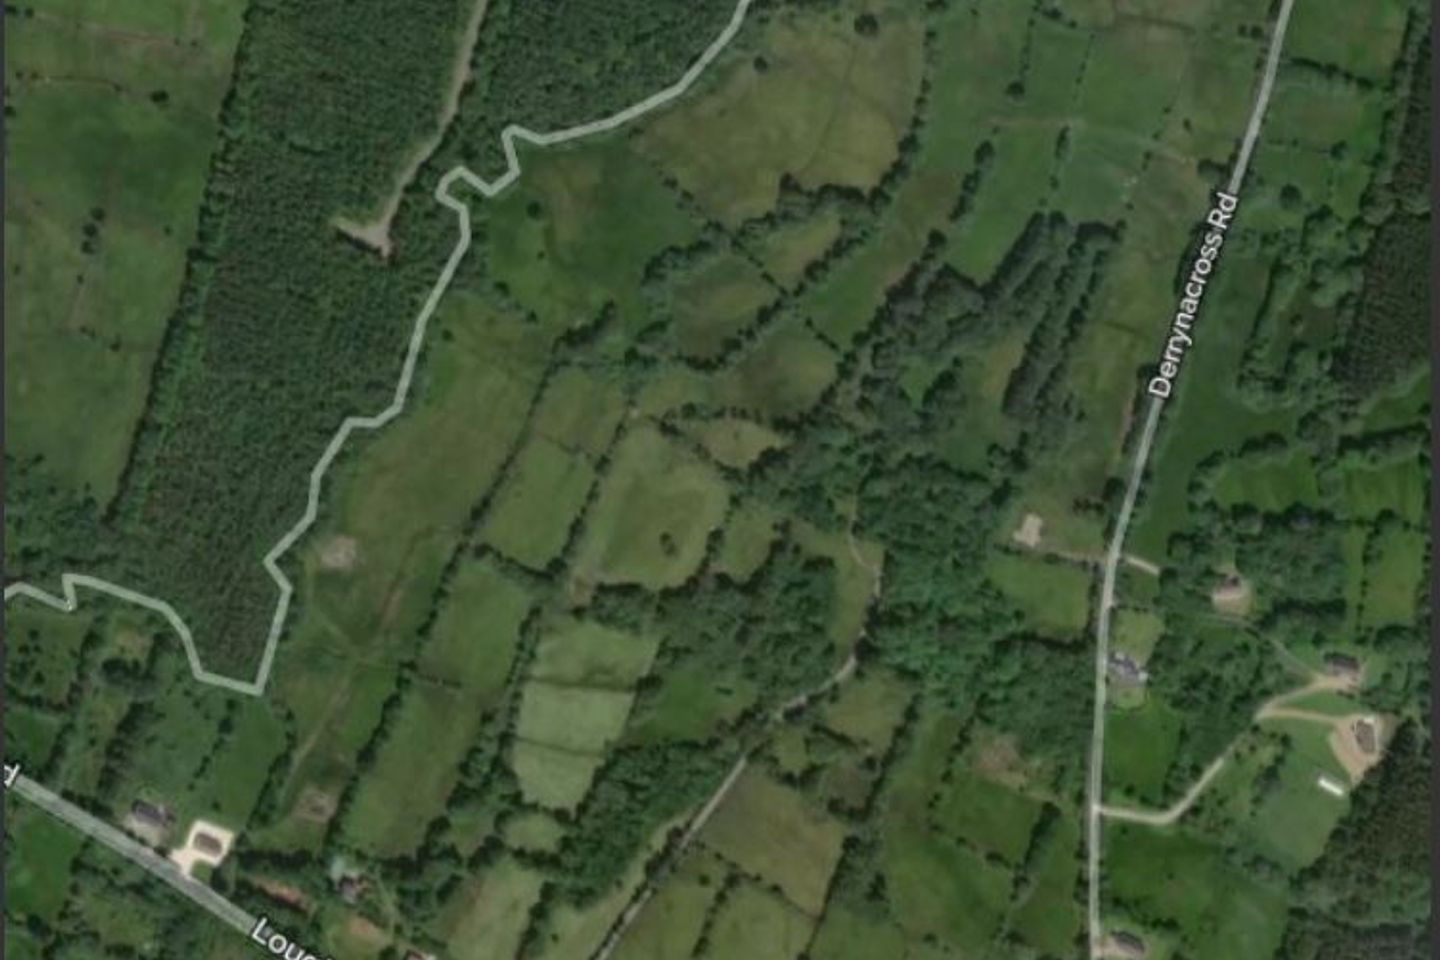 c. 10 Acres of Agricultural Land at Loughside Road, Drumnasreane,Garrison, Enniskillen, Co. Fermanagh